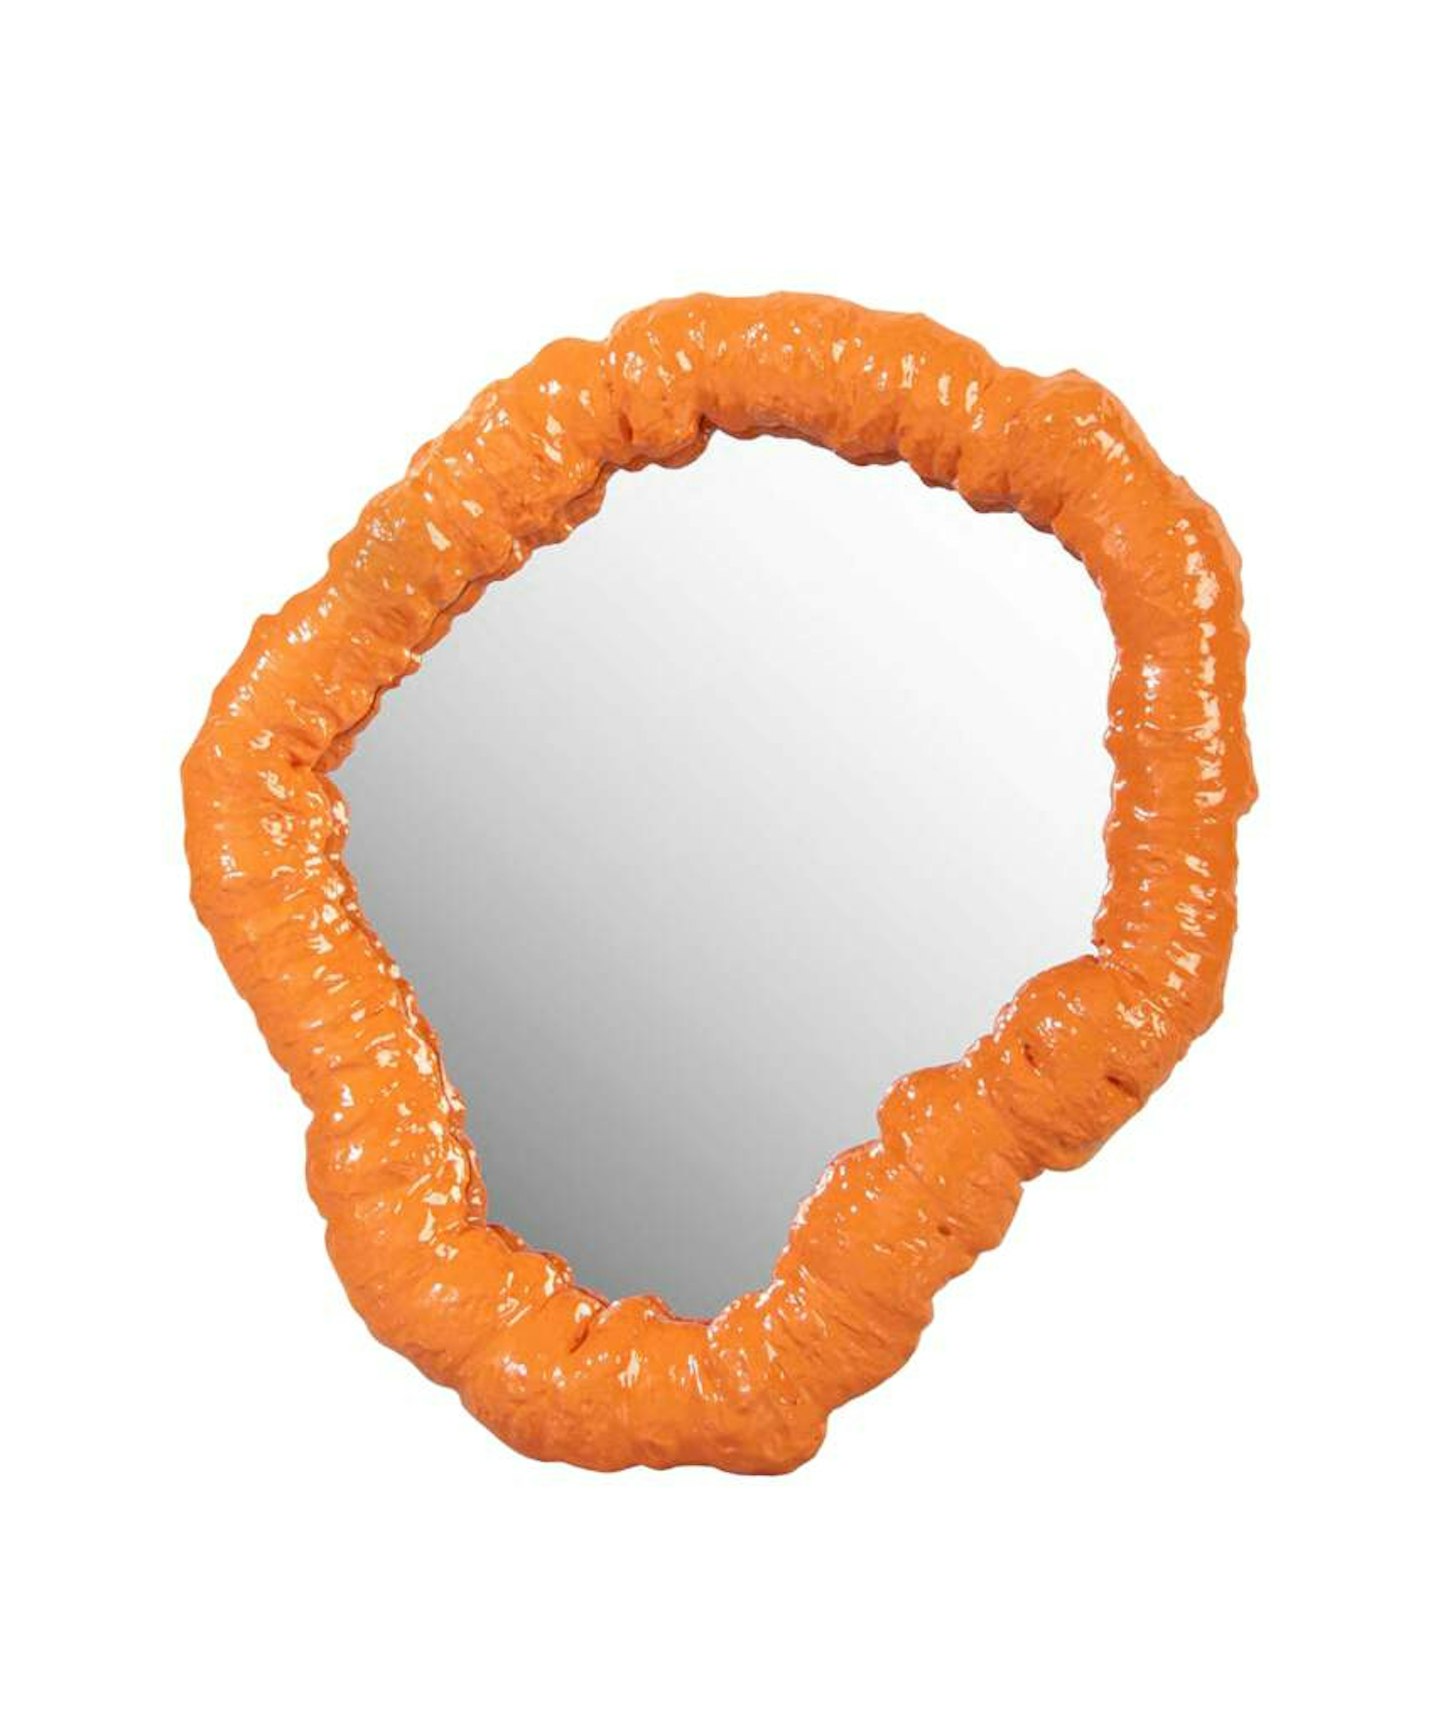 Klevering, Purfect Orange Mirror, £35